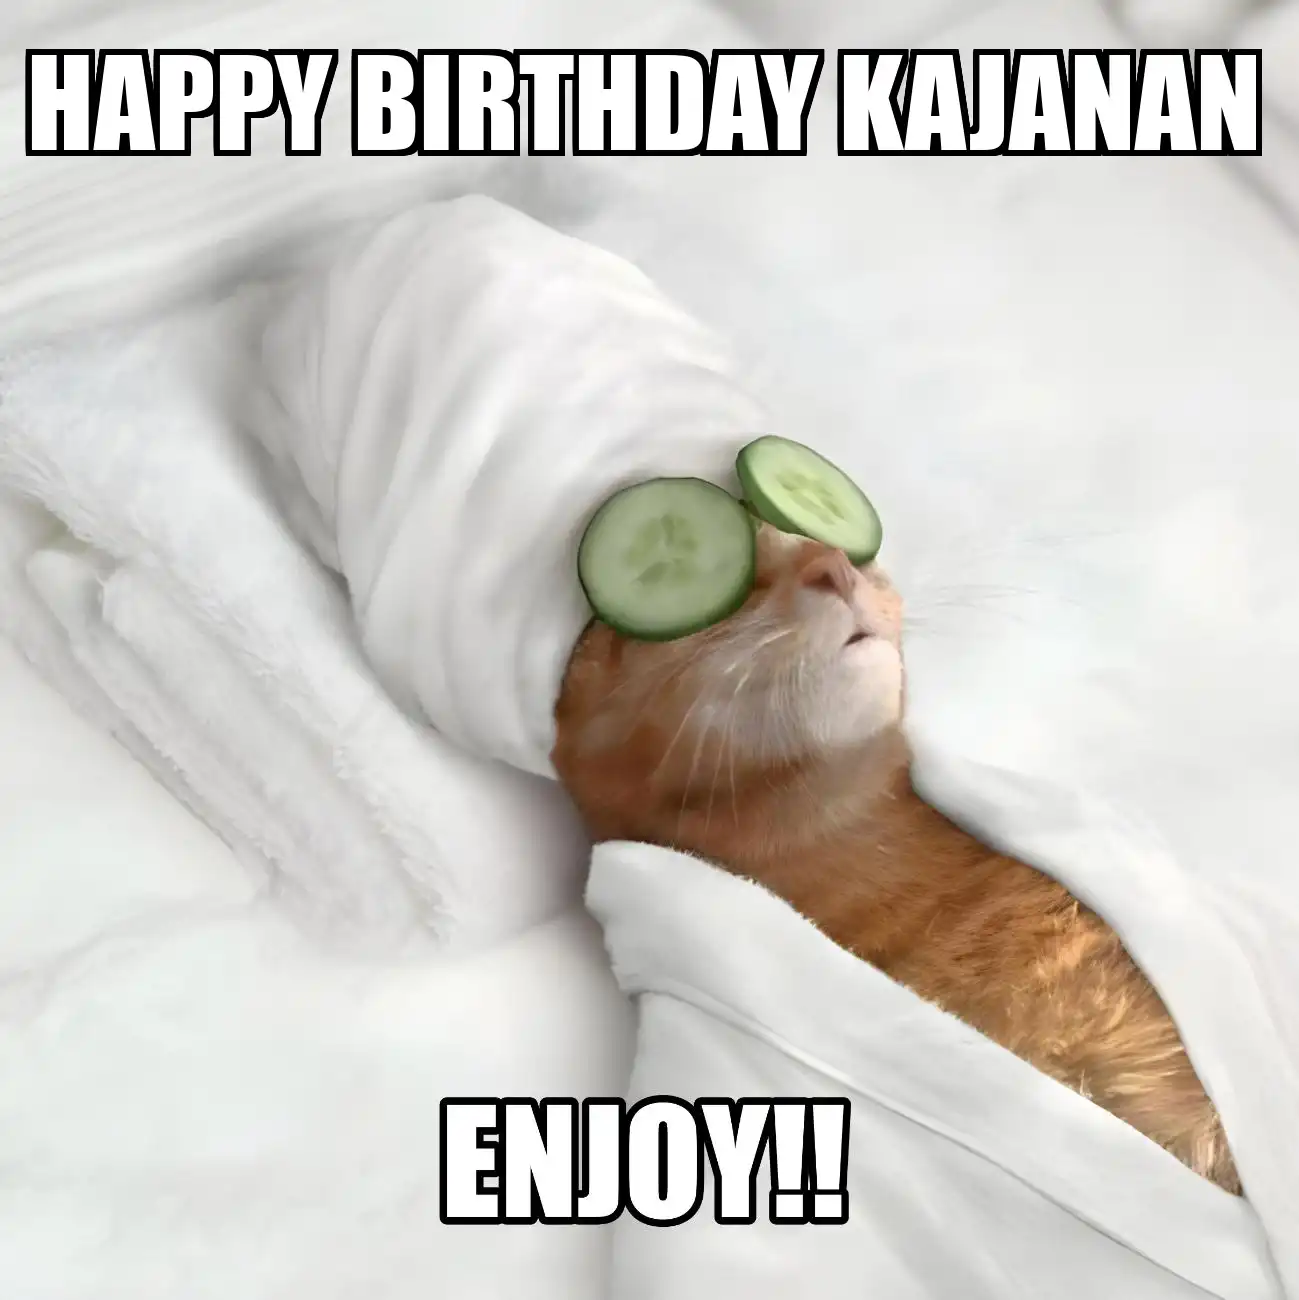 Happy Birthday Kajanan Enjoy Cat Meme